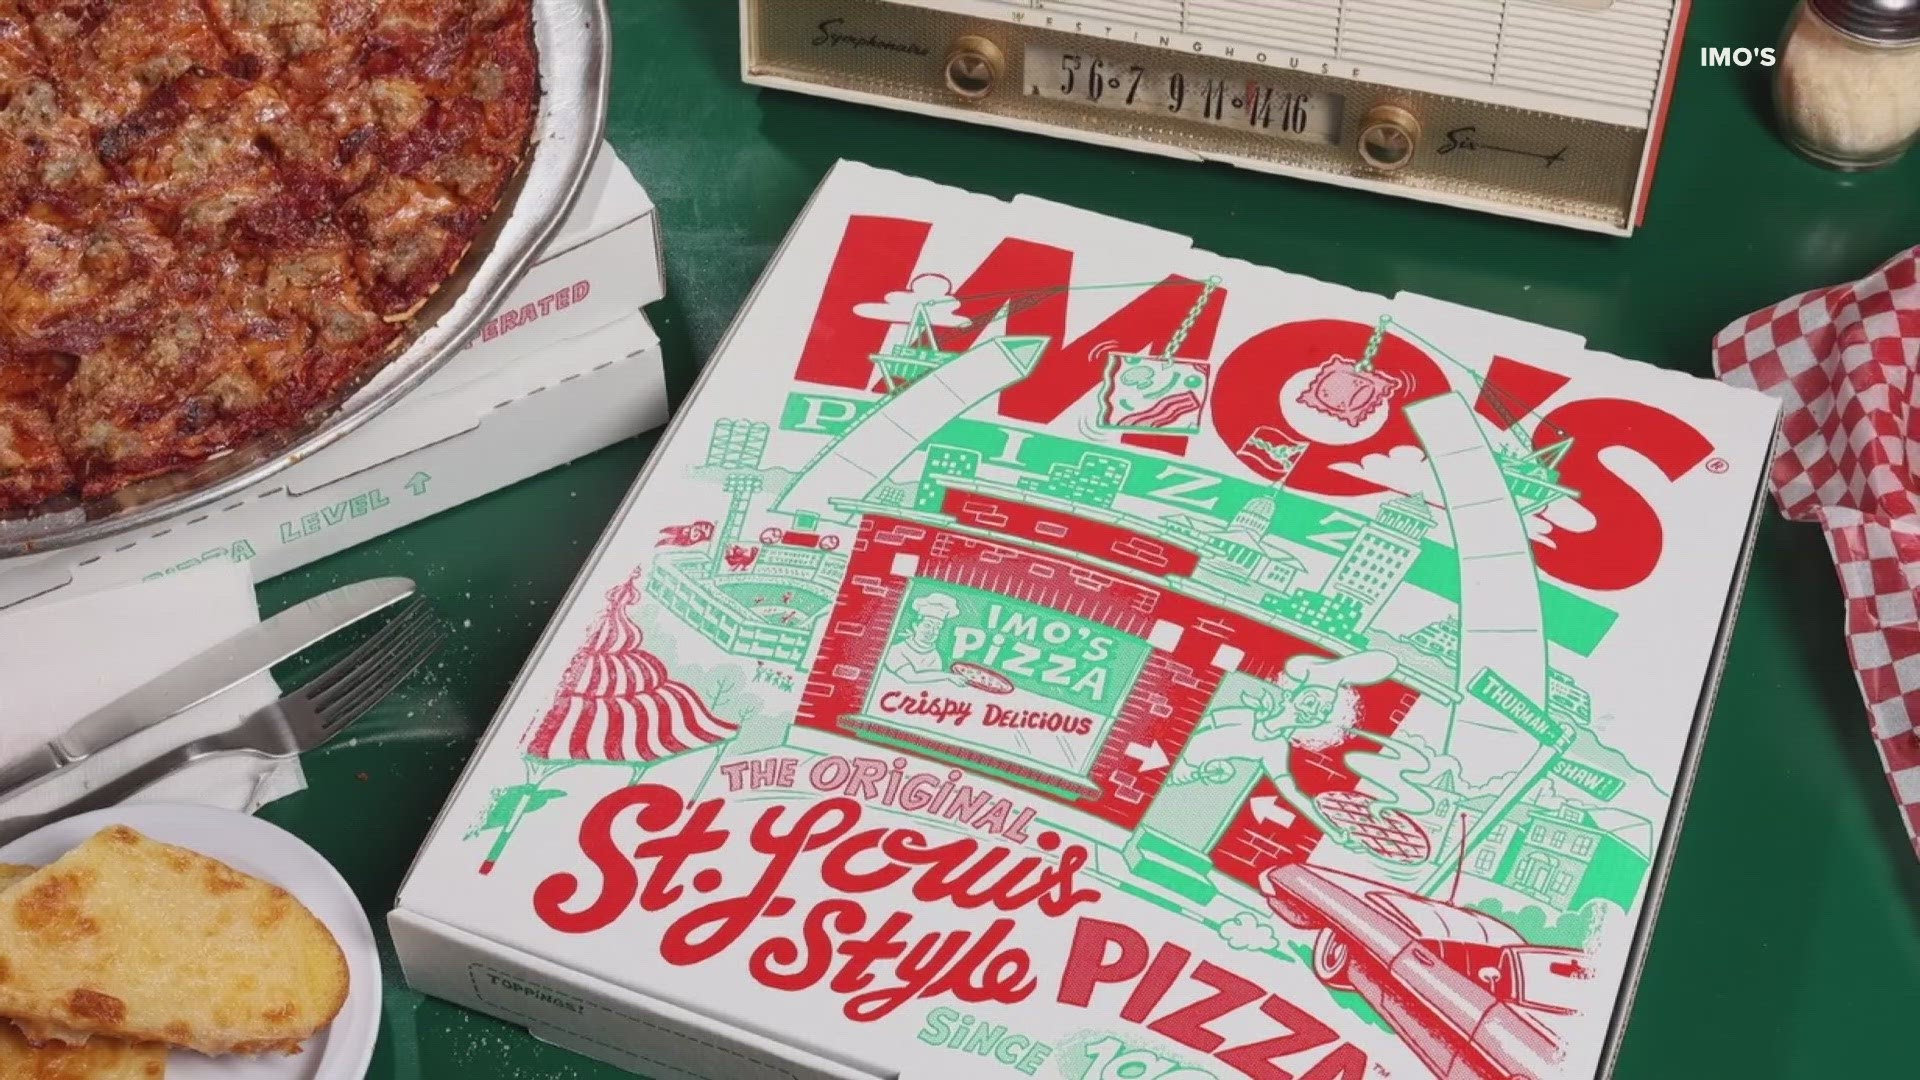 Imo's Pizza to celebrate 60th anniversary with commemorative box, specials